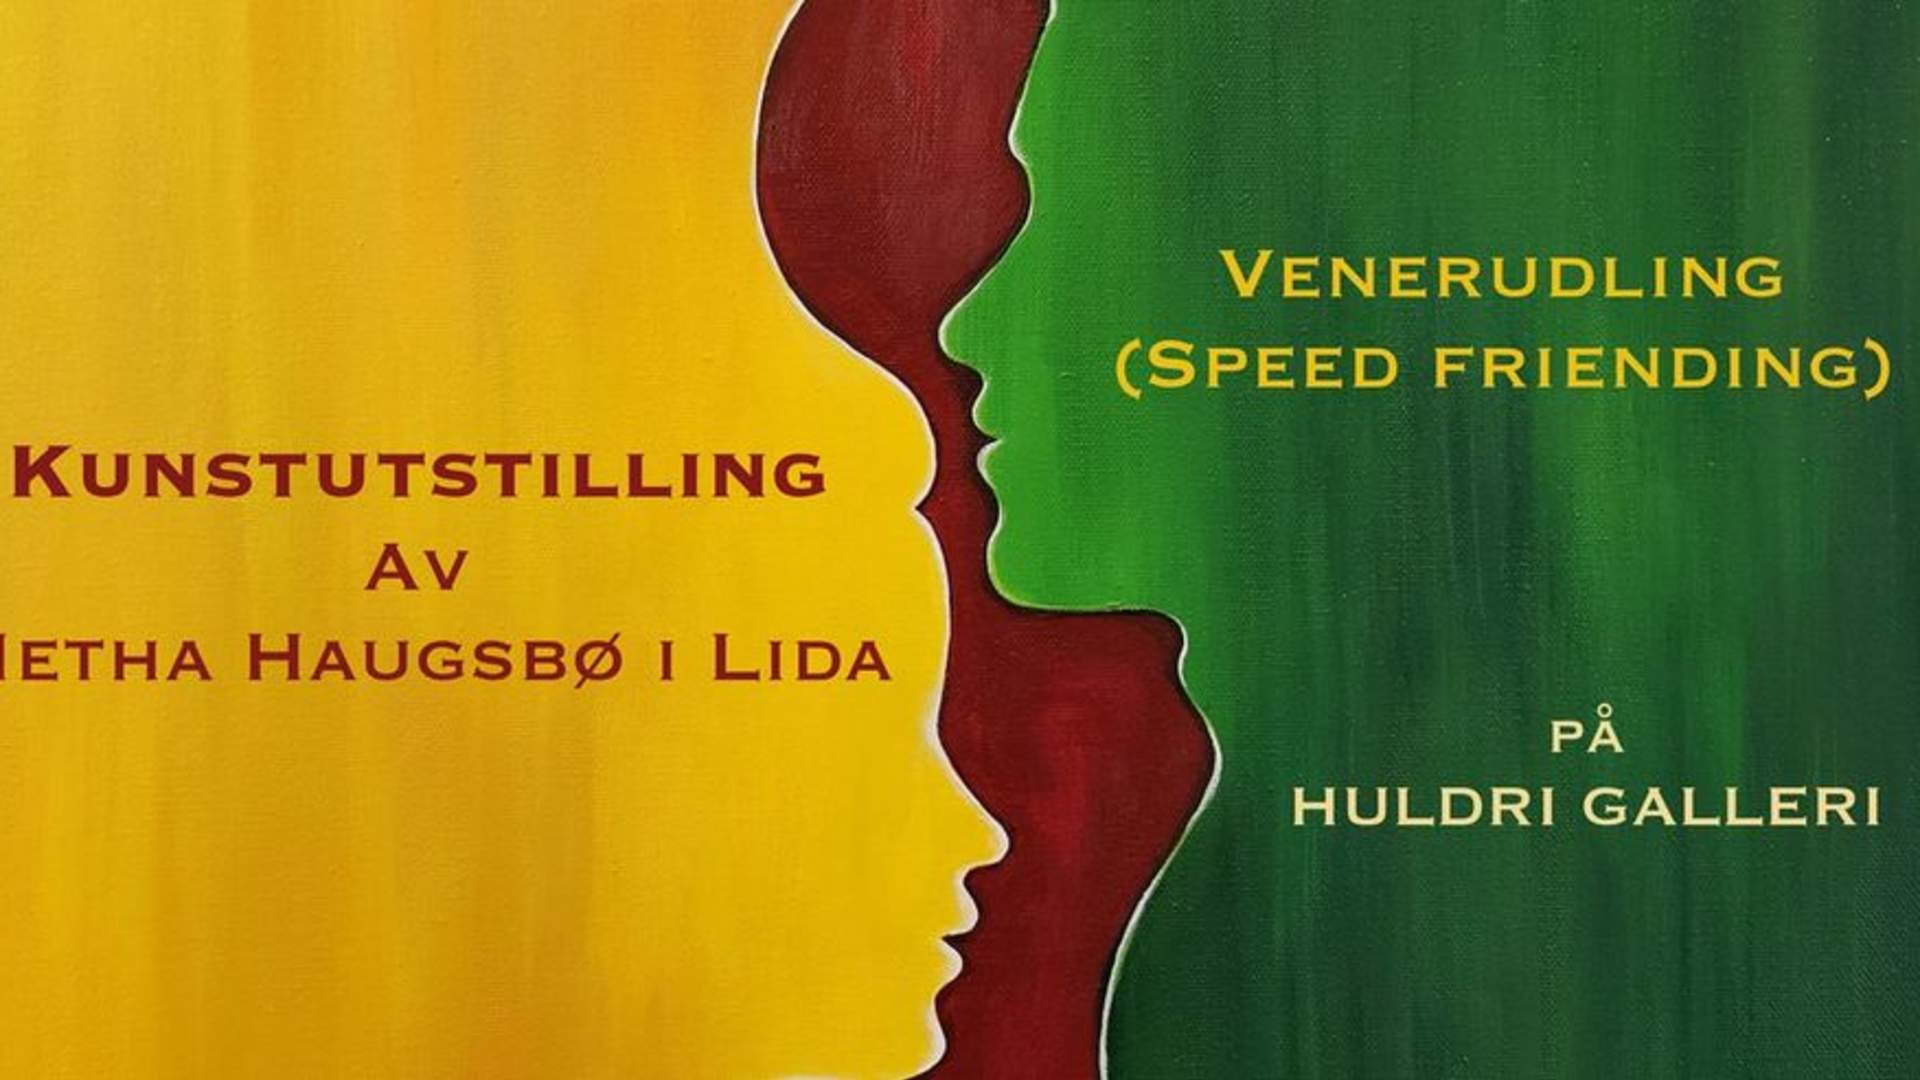 Kunstutstilling av Metha Haugsbø i Lida og VENERUDLING (Speed friending), på Huldri Galleri